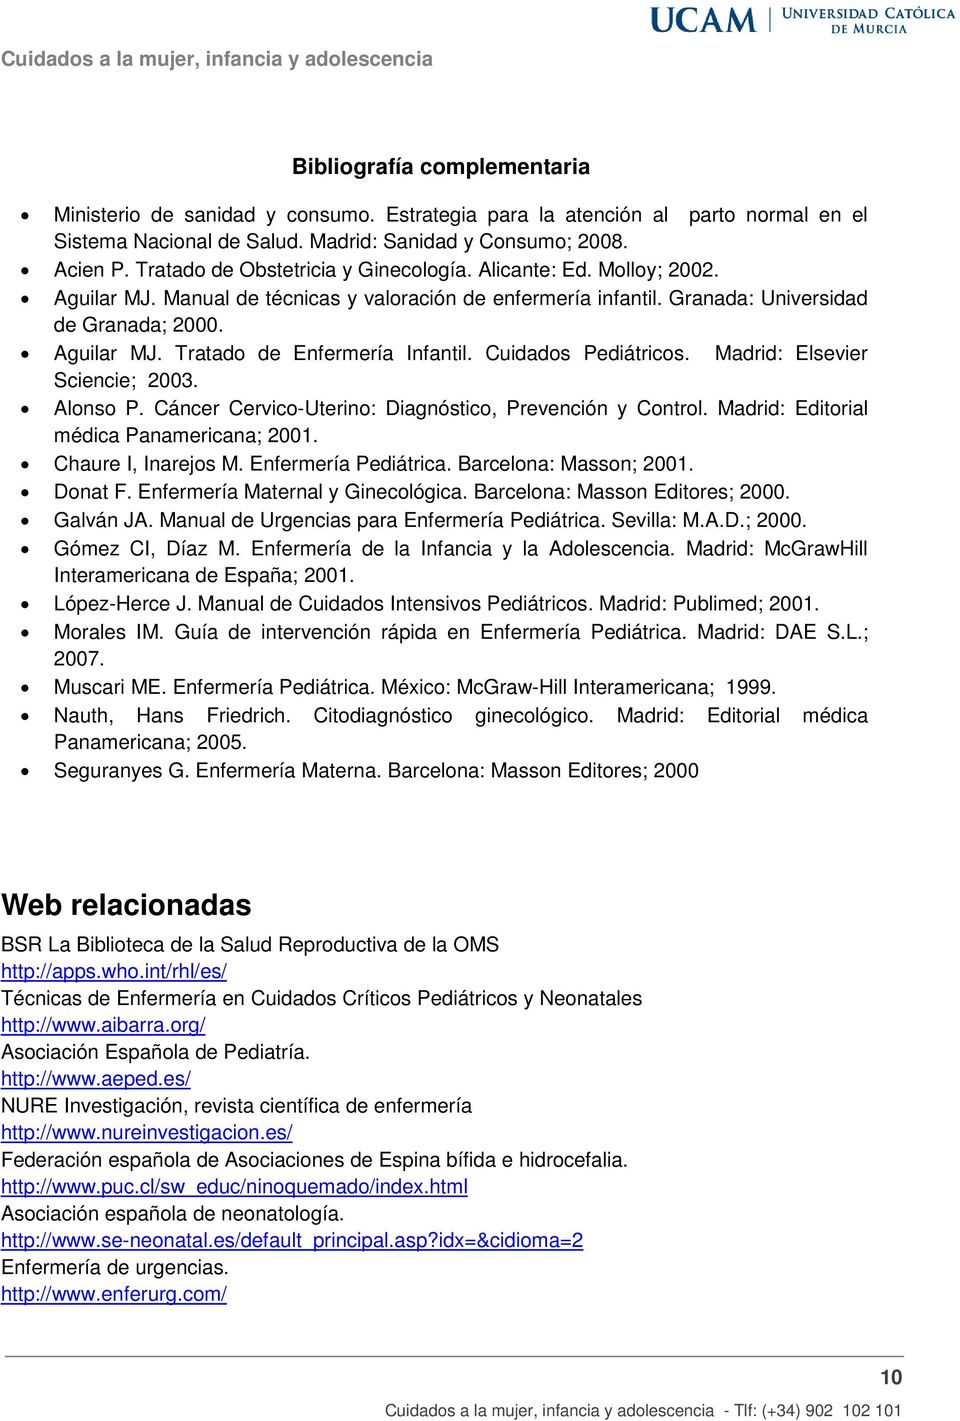 Cuidados Pediátricos. Madrid: Elsevier Sciencie; 2003. Alonso P. Cáncer Cervico-Uterino: Diagnóstico, Prevención y Control. Madrid: Editorial médica Panamericana; 2001. Chaure I, Inarejos M.